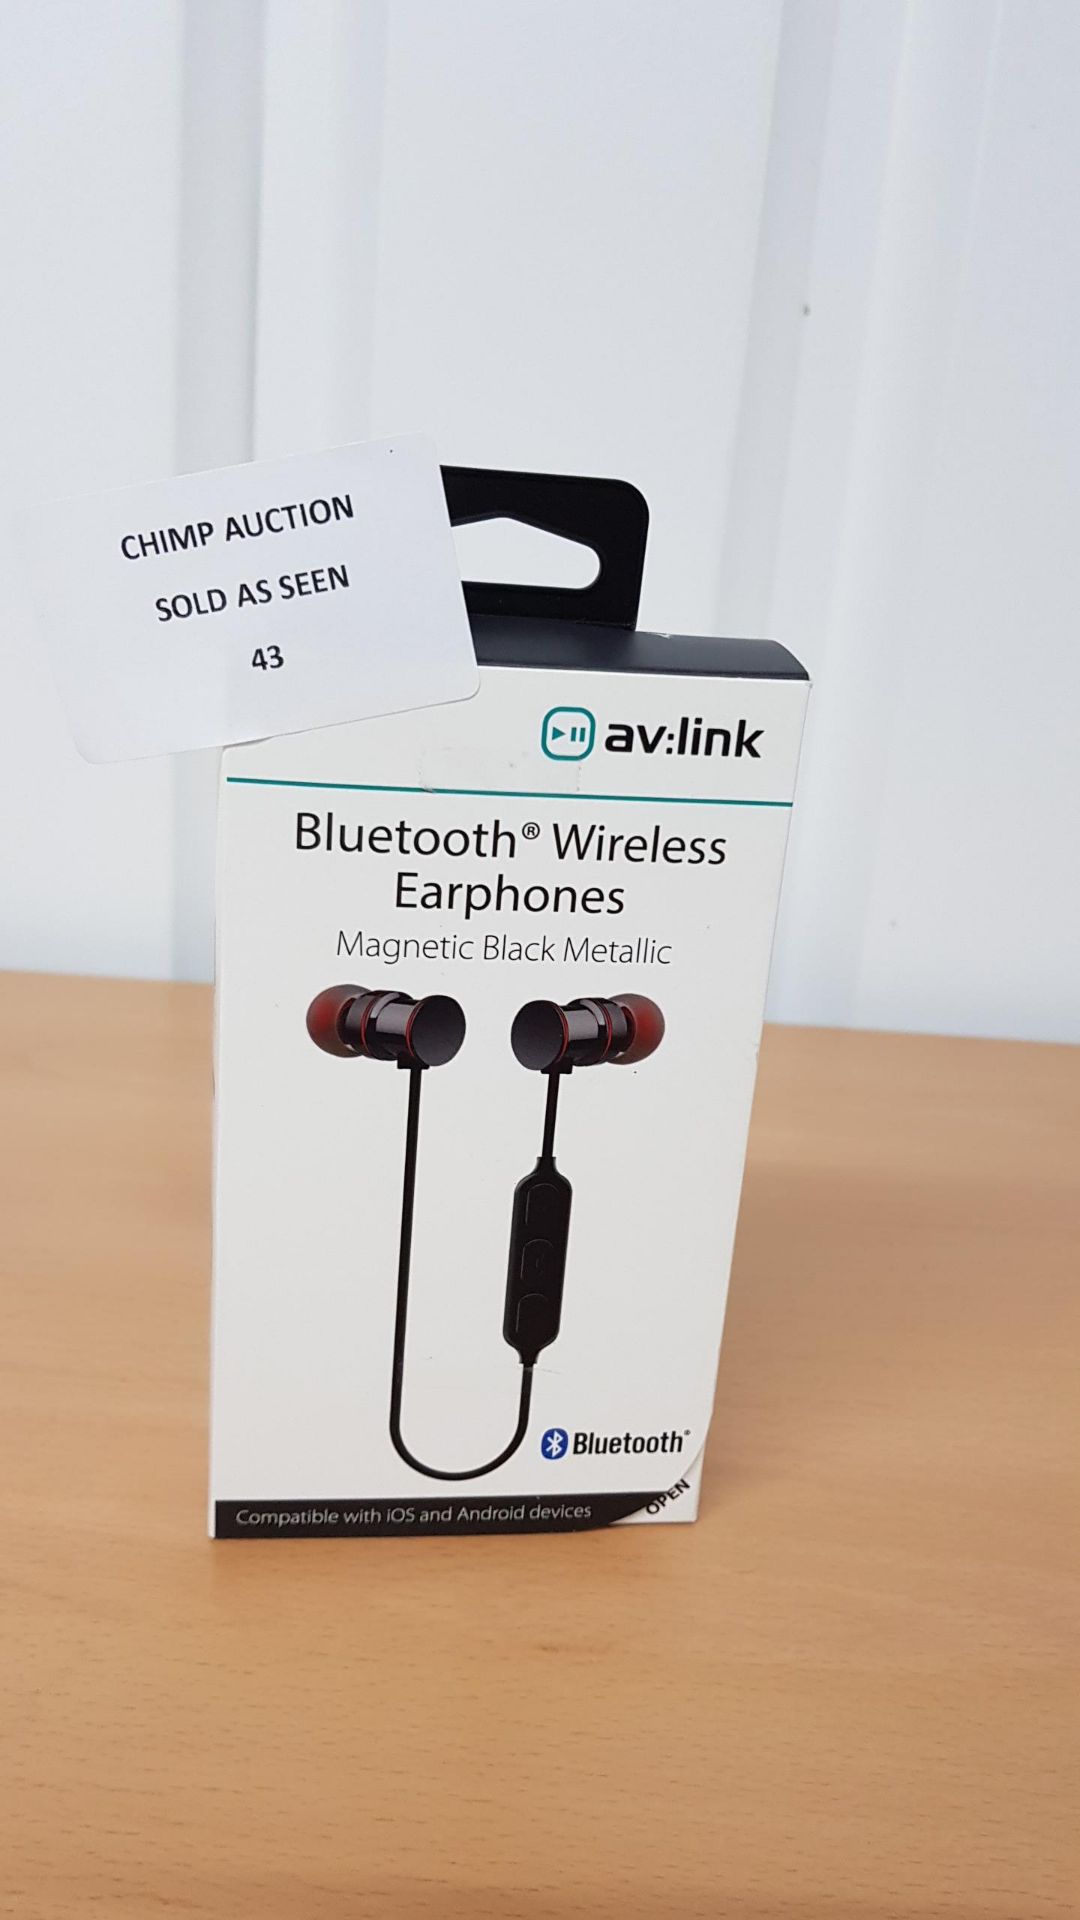 Av.link Bluetooth Wireless earphones